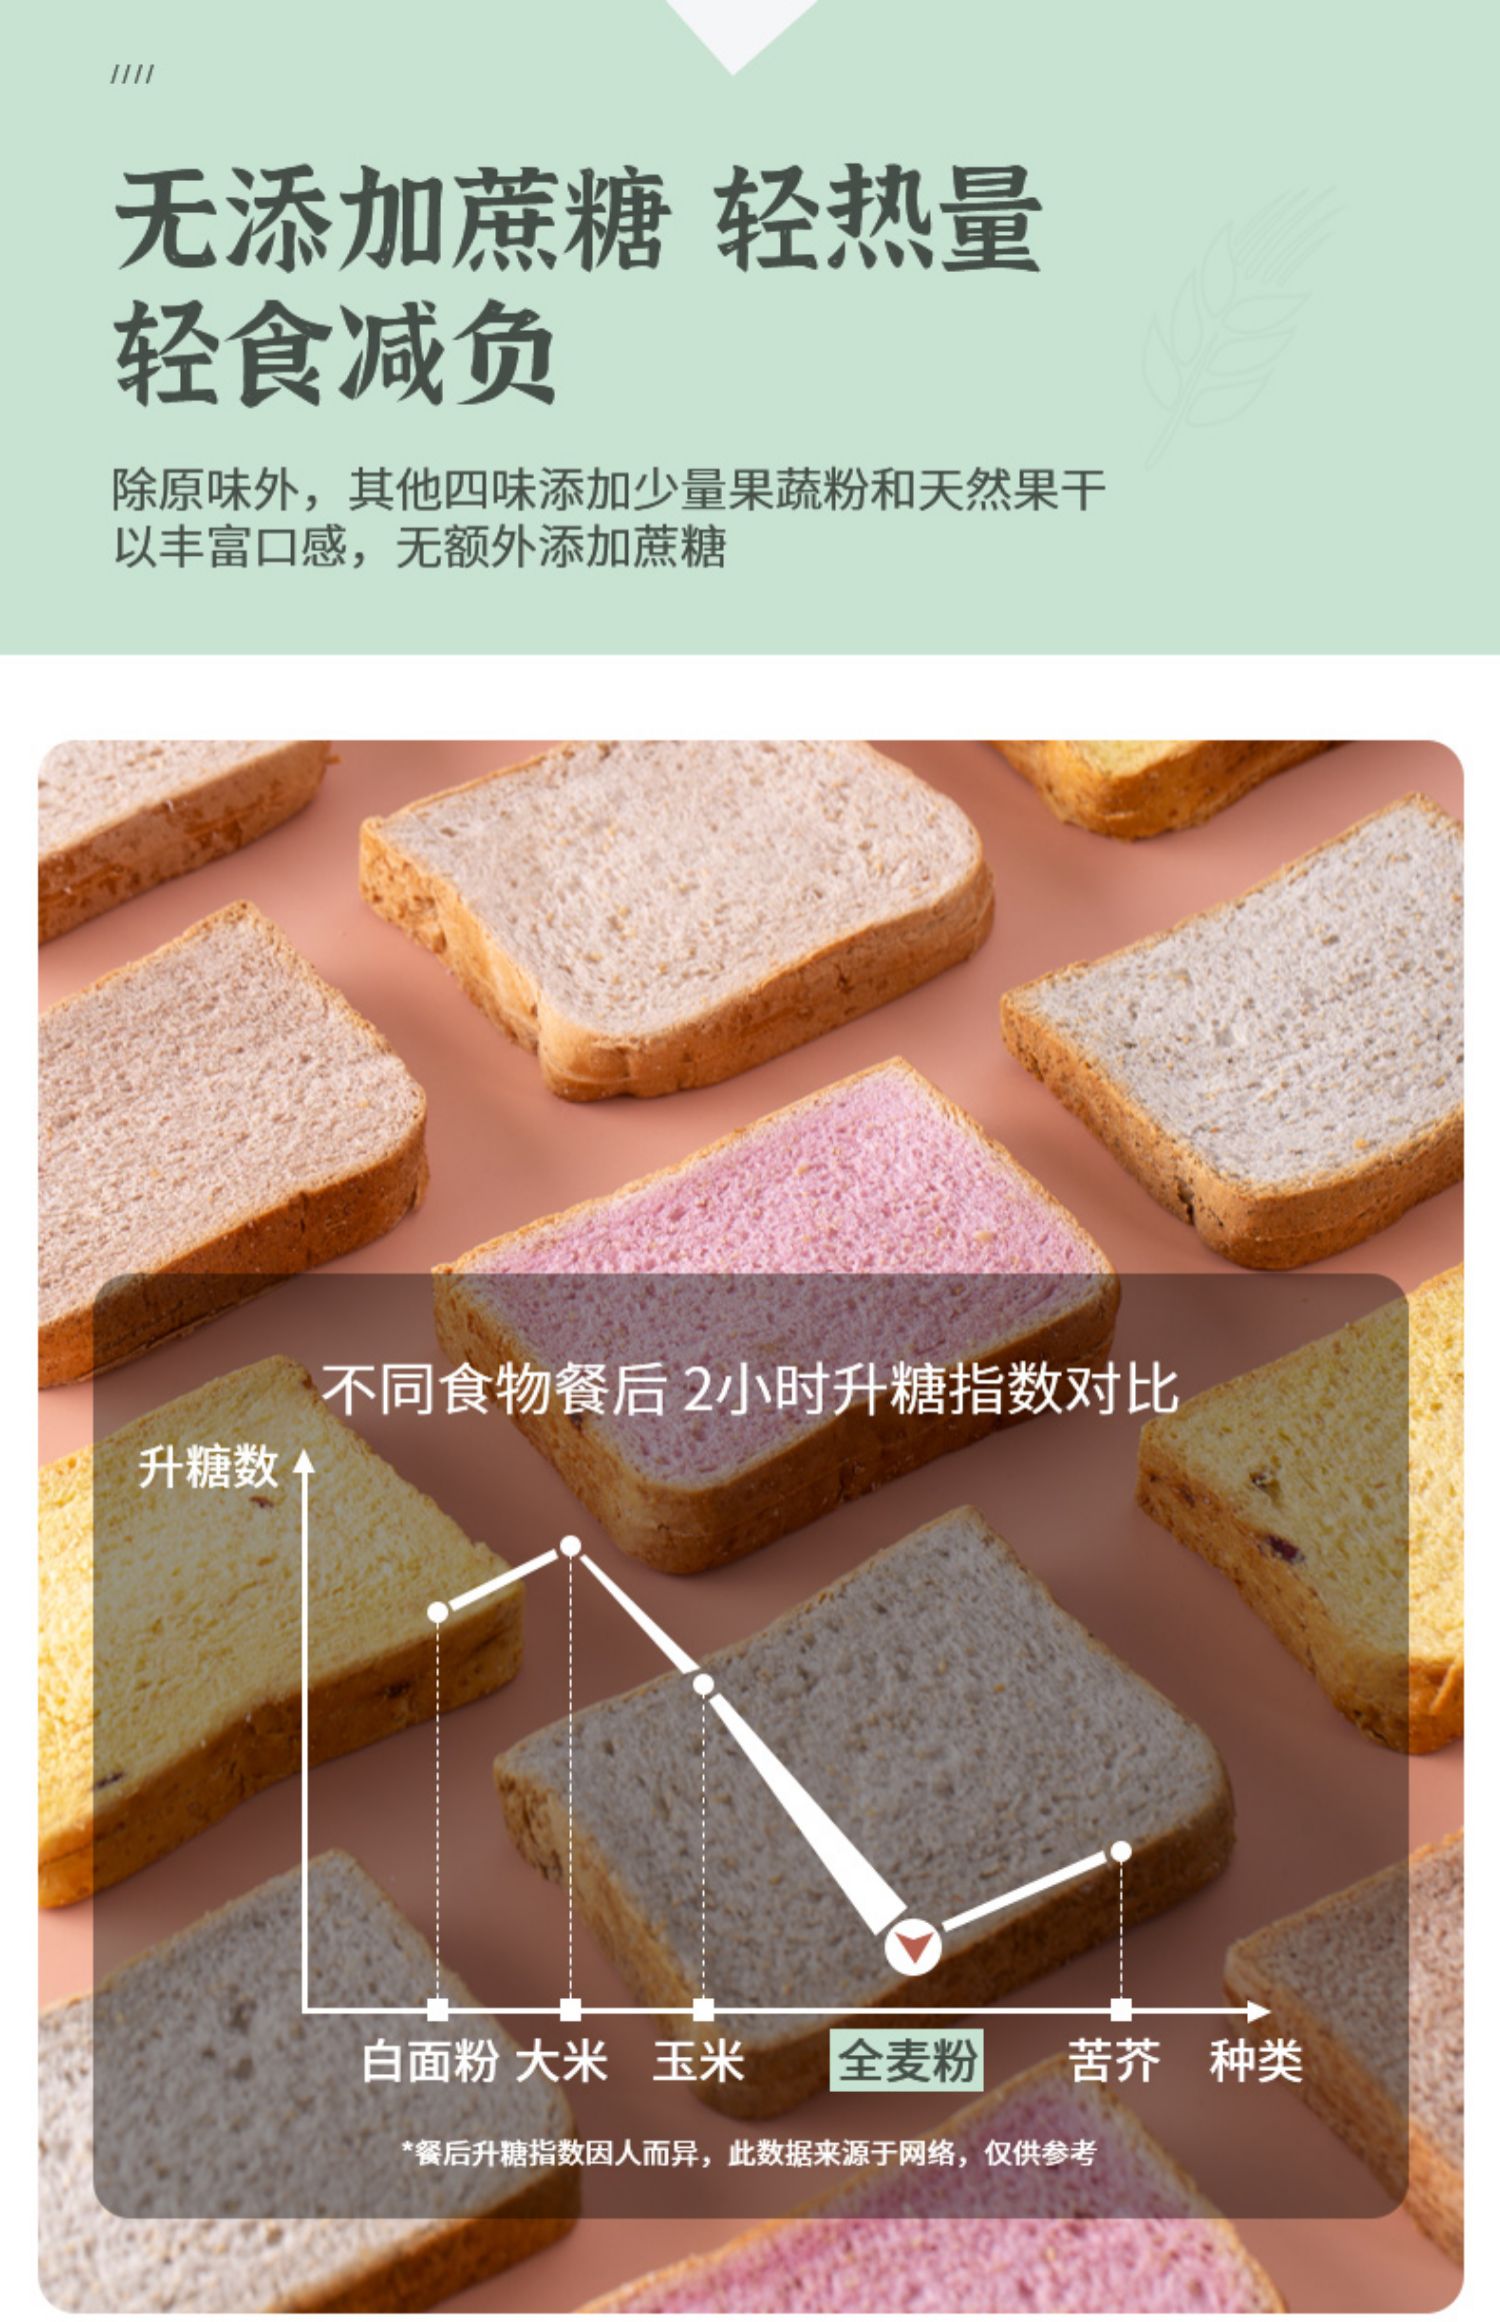 【大唐神厨】0蔗糖低脂黑麦全麦面包1000g